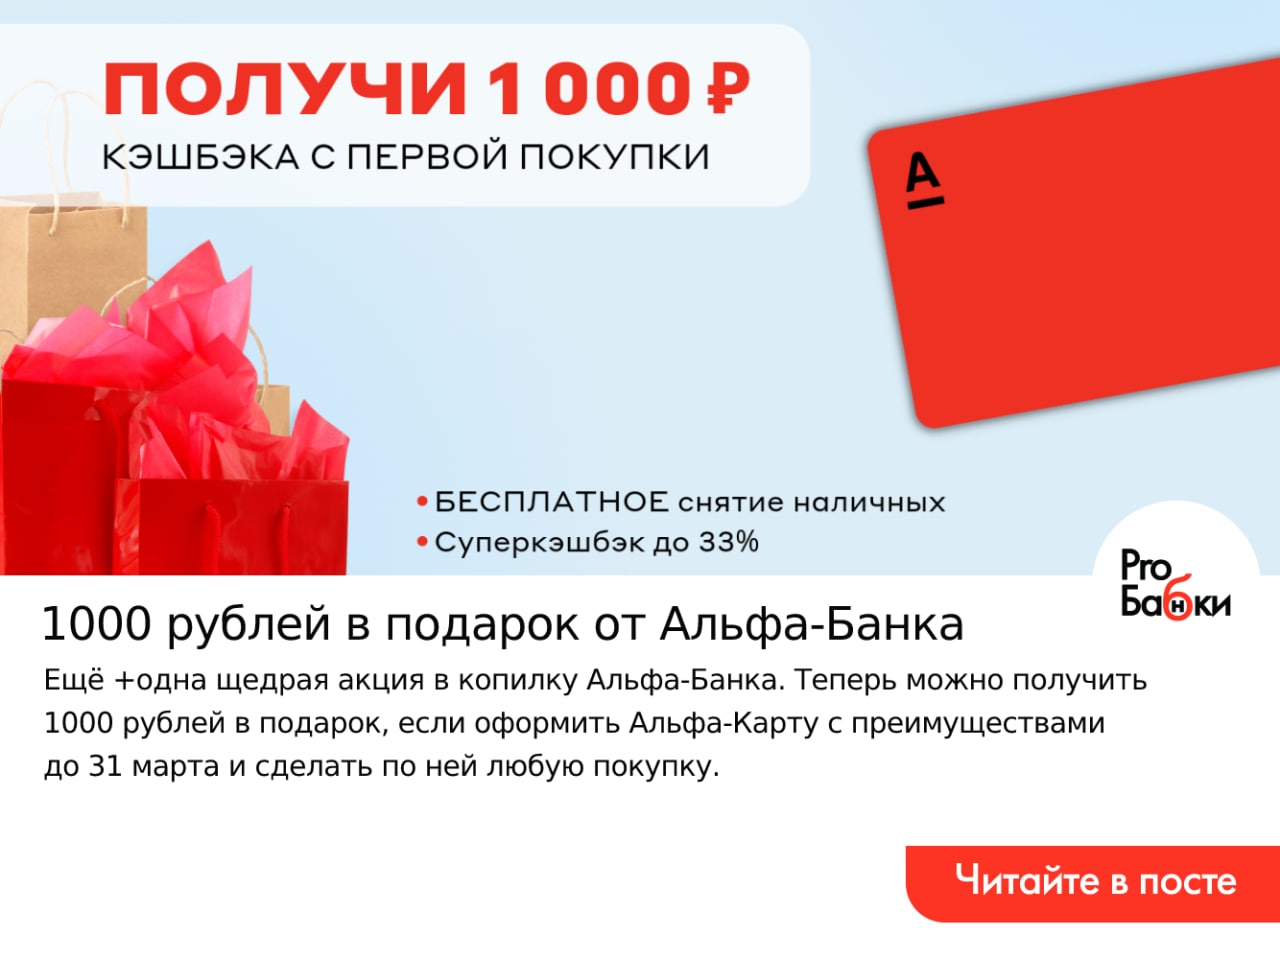 1000 рублей за регистрацию вывод сразу